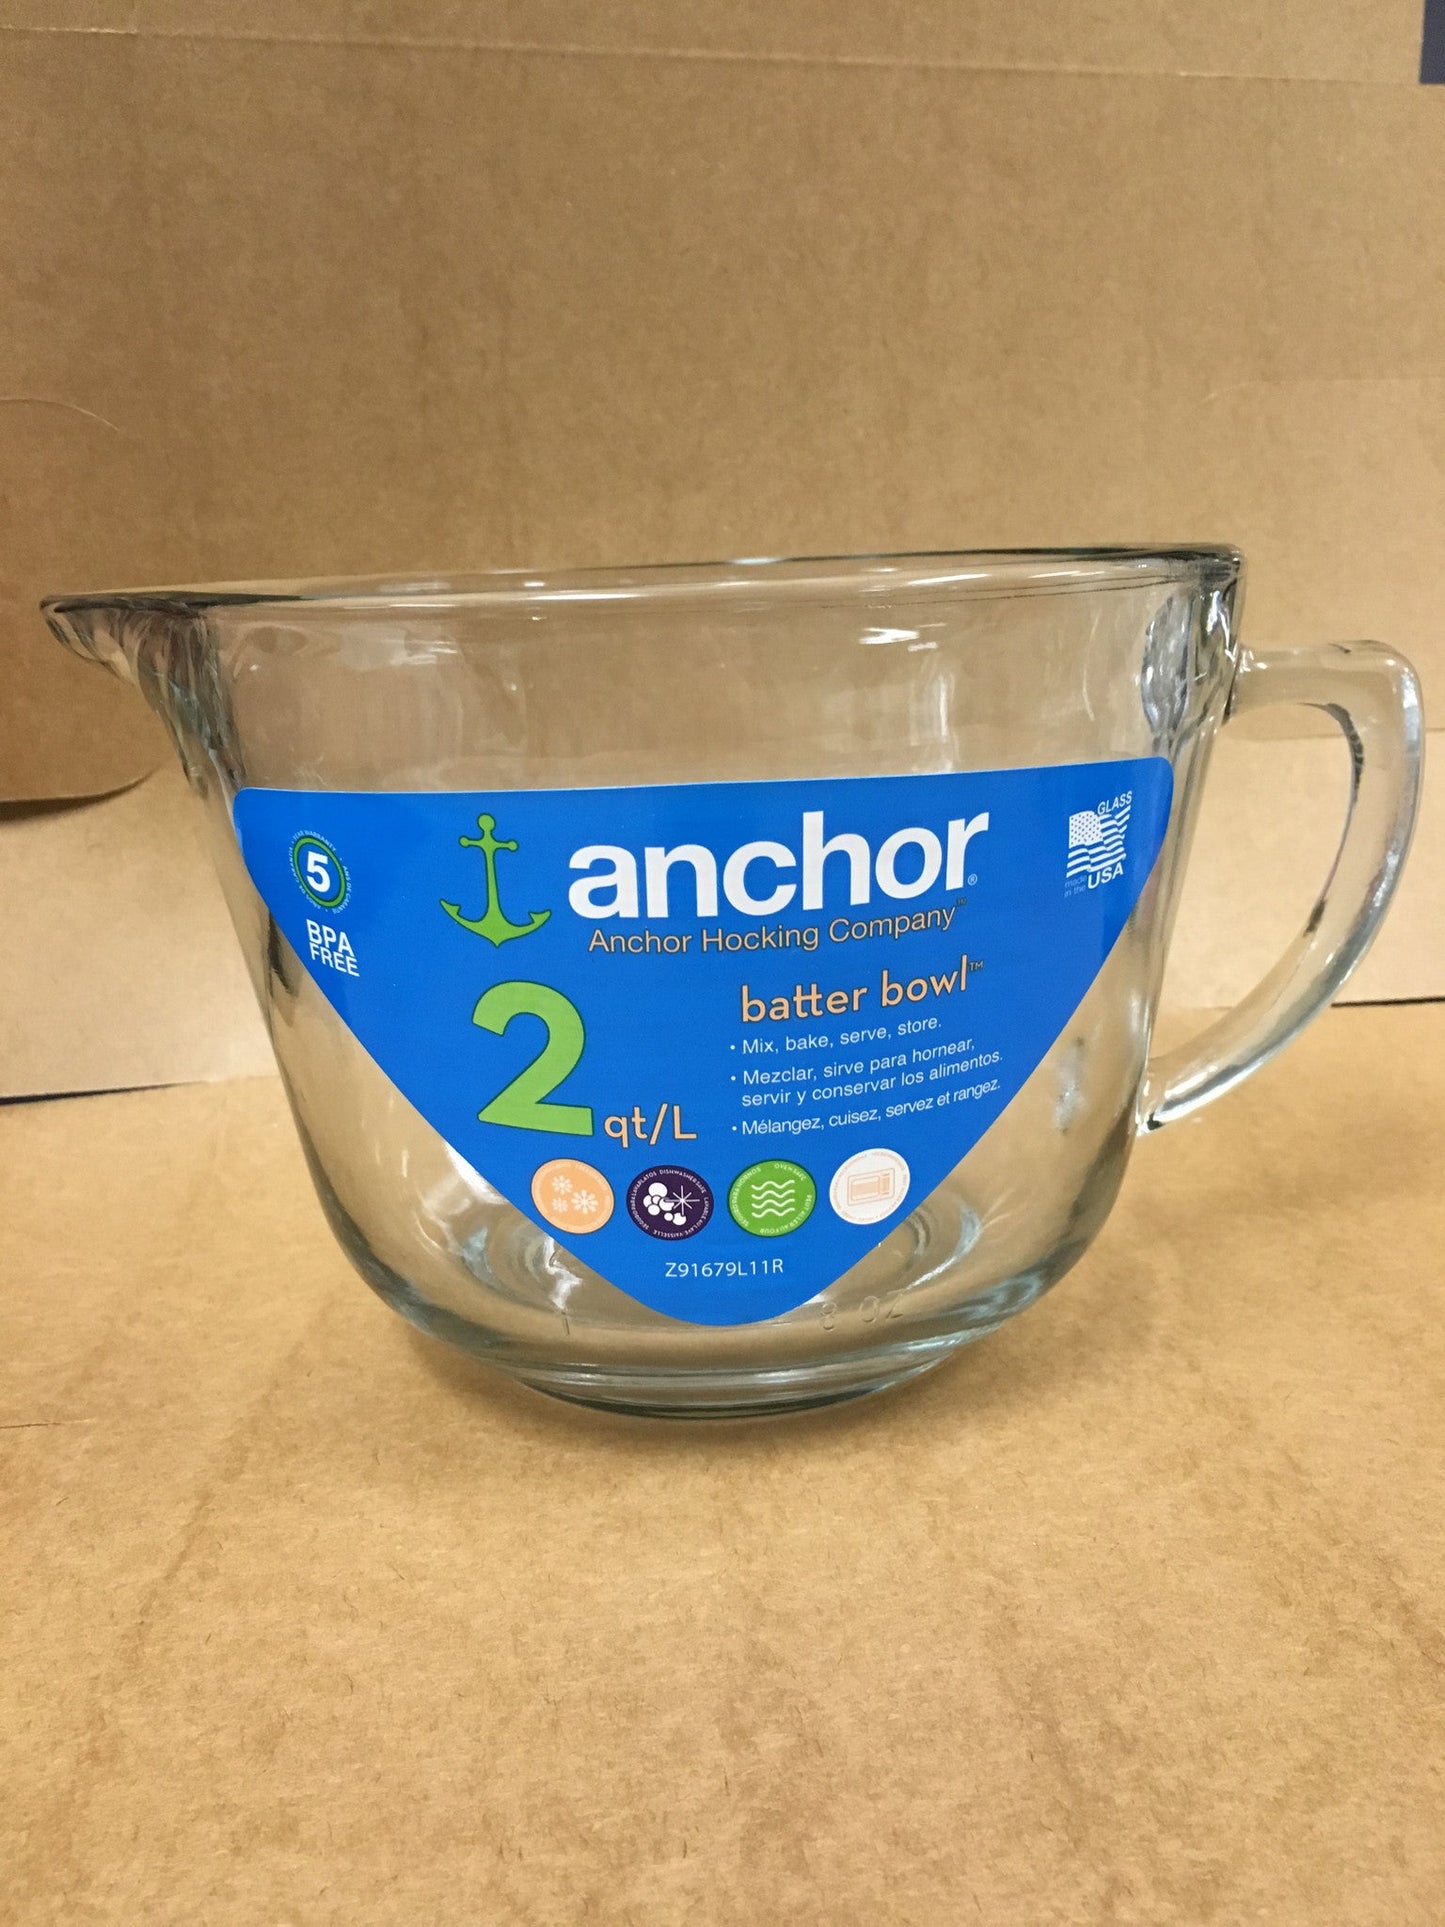 Anchor batter bowl